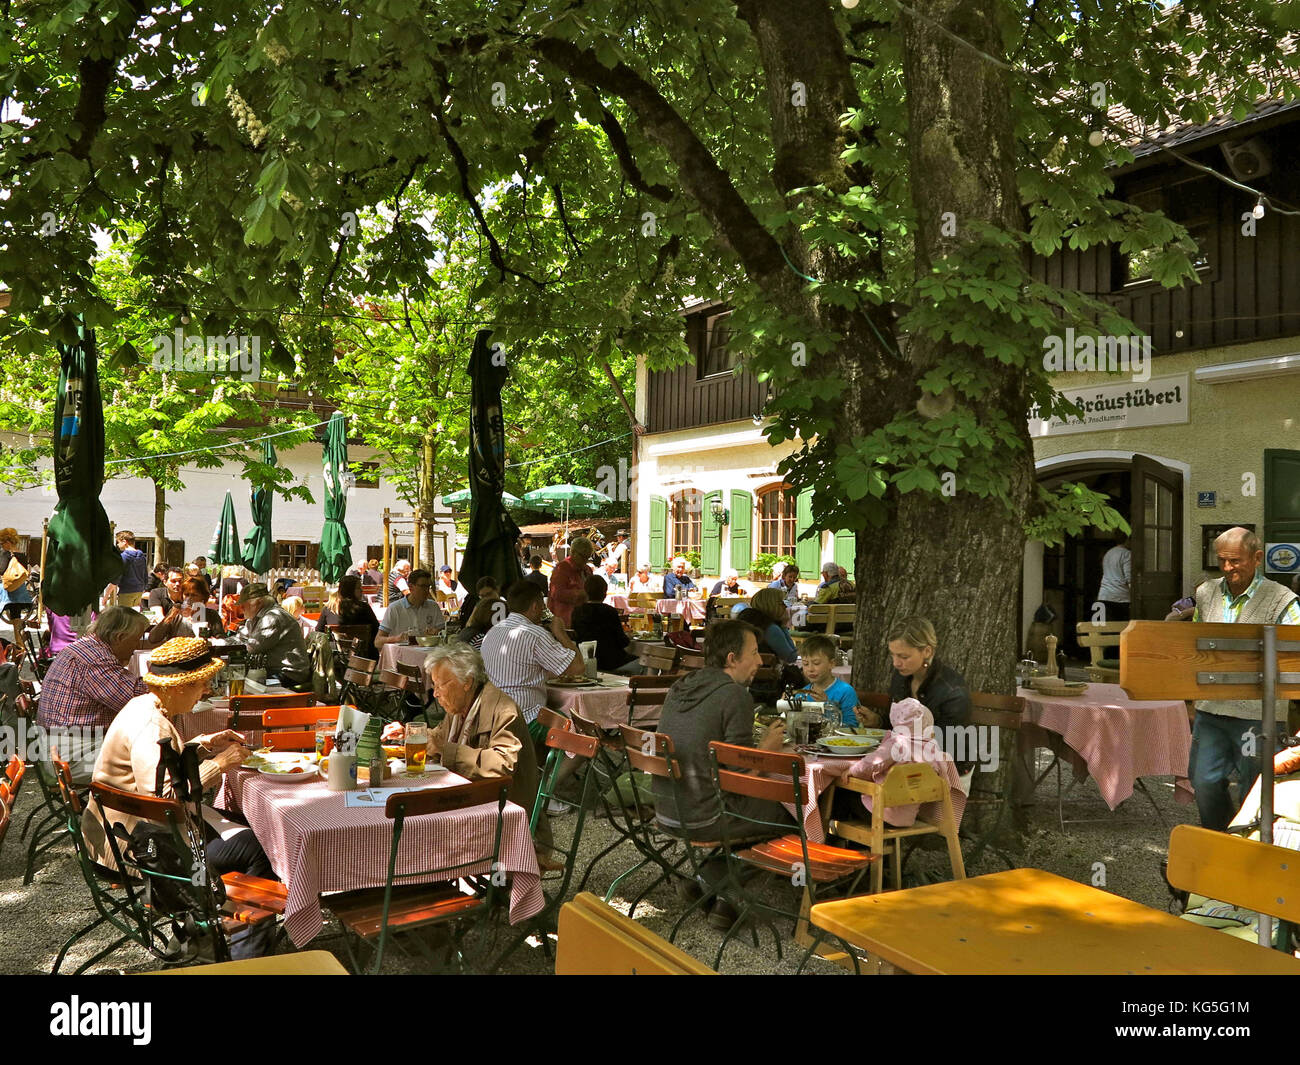 Alemania, Baviera, Aying, Ayinger Bräustüberl, jardín de la cerveza, invitados, comer, beber, Foto de stock